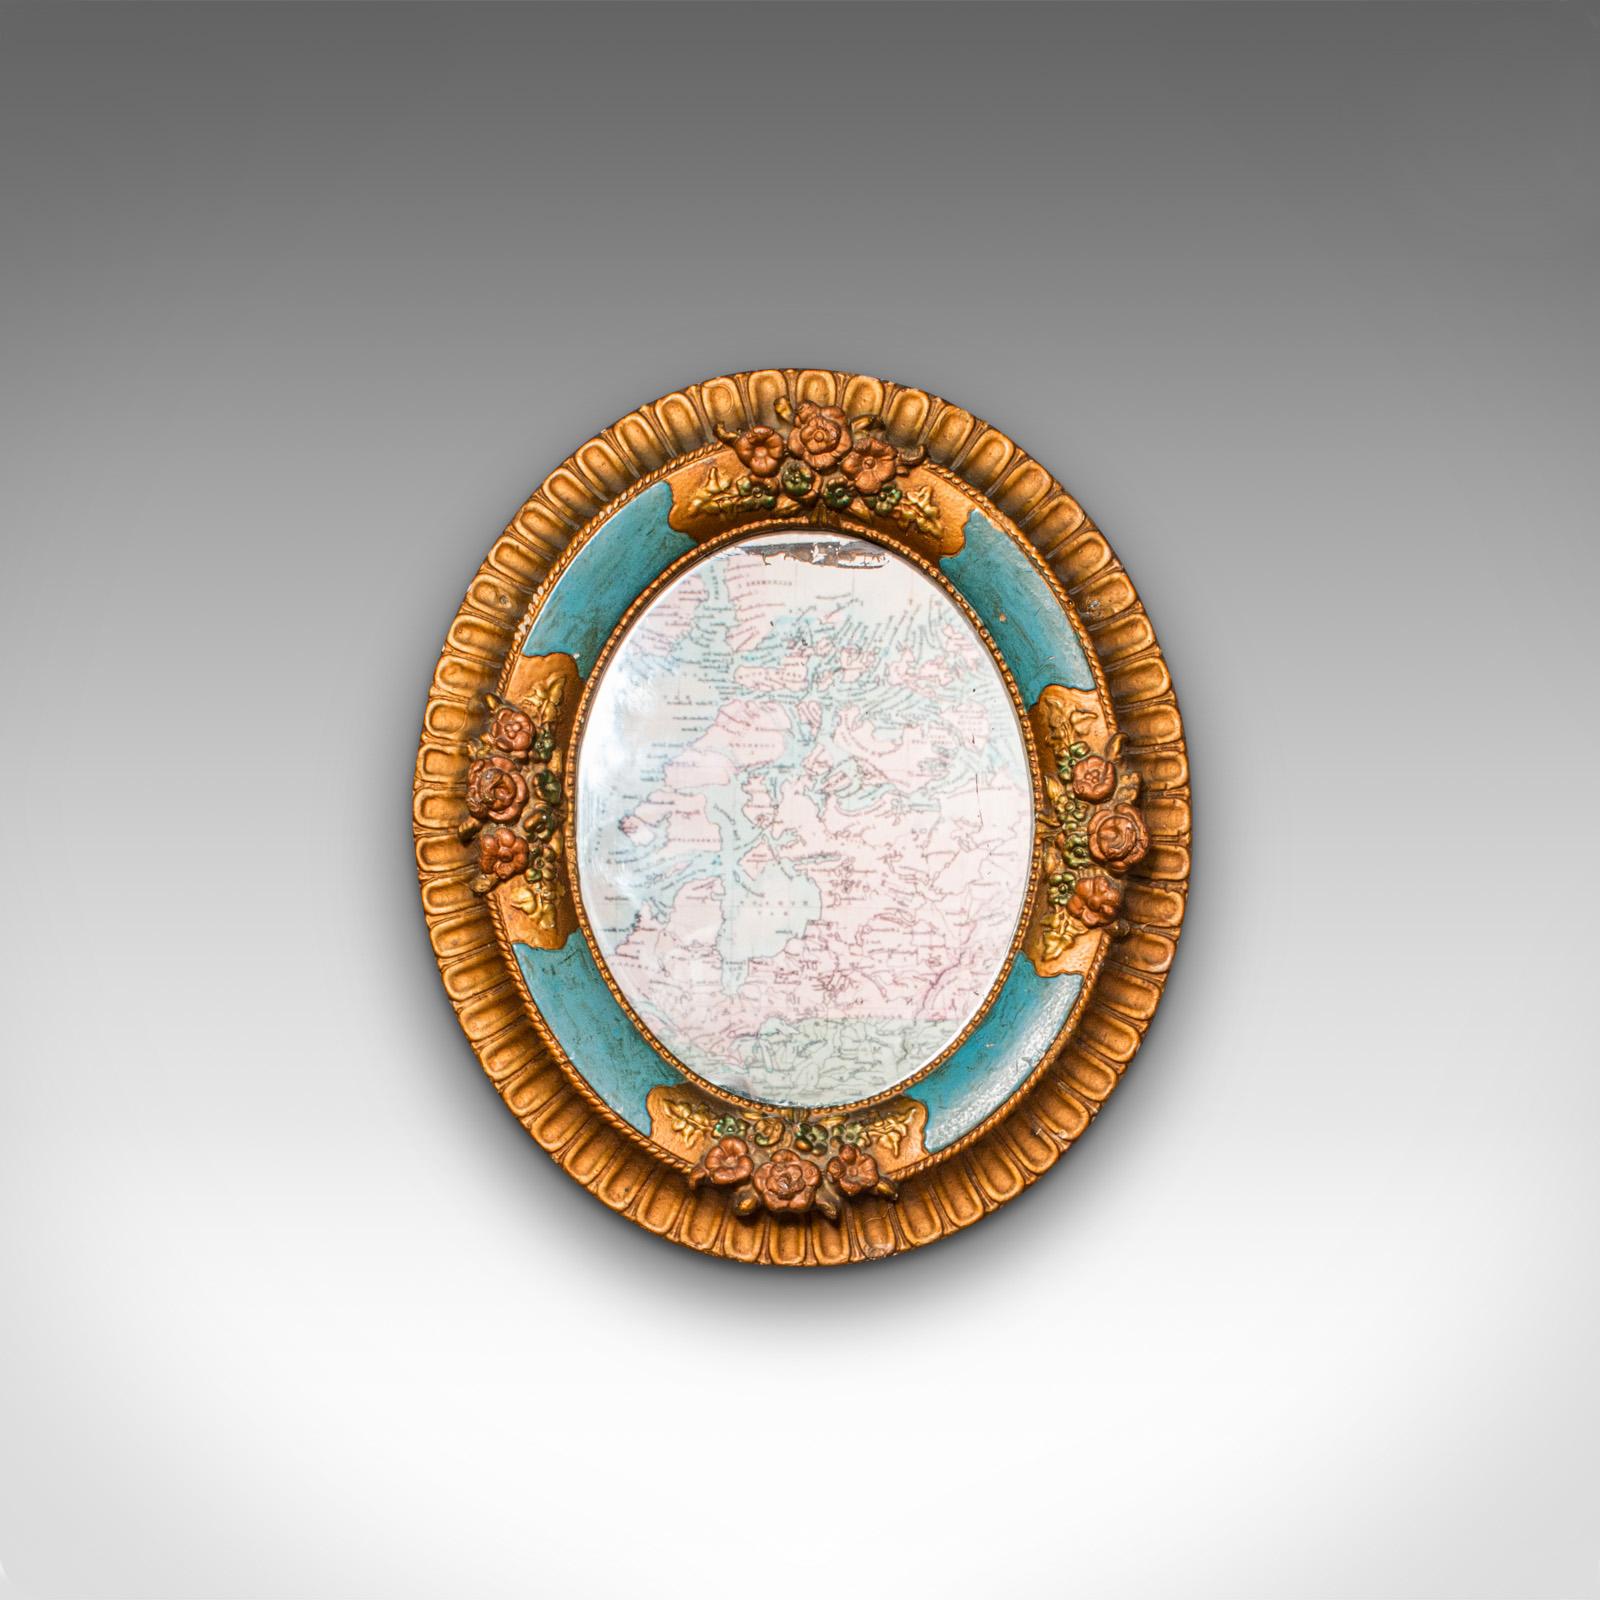 Dies ist ein antiker dekorativer Wandspiegel. Ein deutscher ovaler Spiegel aus Gips und vergoldet in der Art des Schwarzwaldes, aus der späten viktorianischen Zeit, um 1900.

Erfreulich ausdrucksstarke und farbenfrohe Form mit Anklängen an den